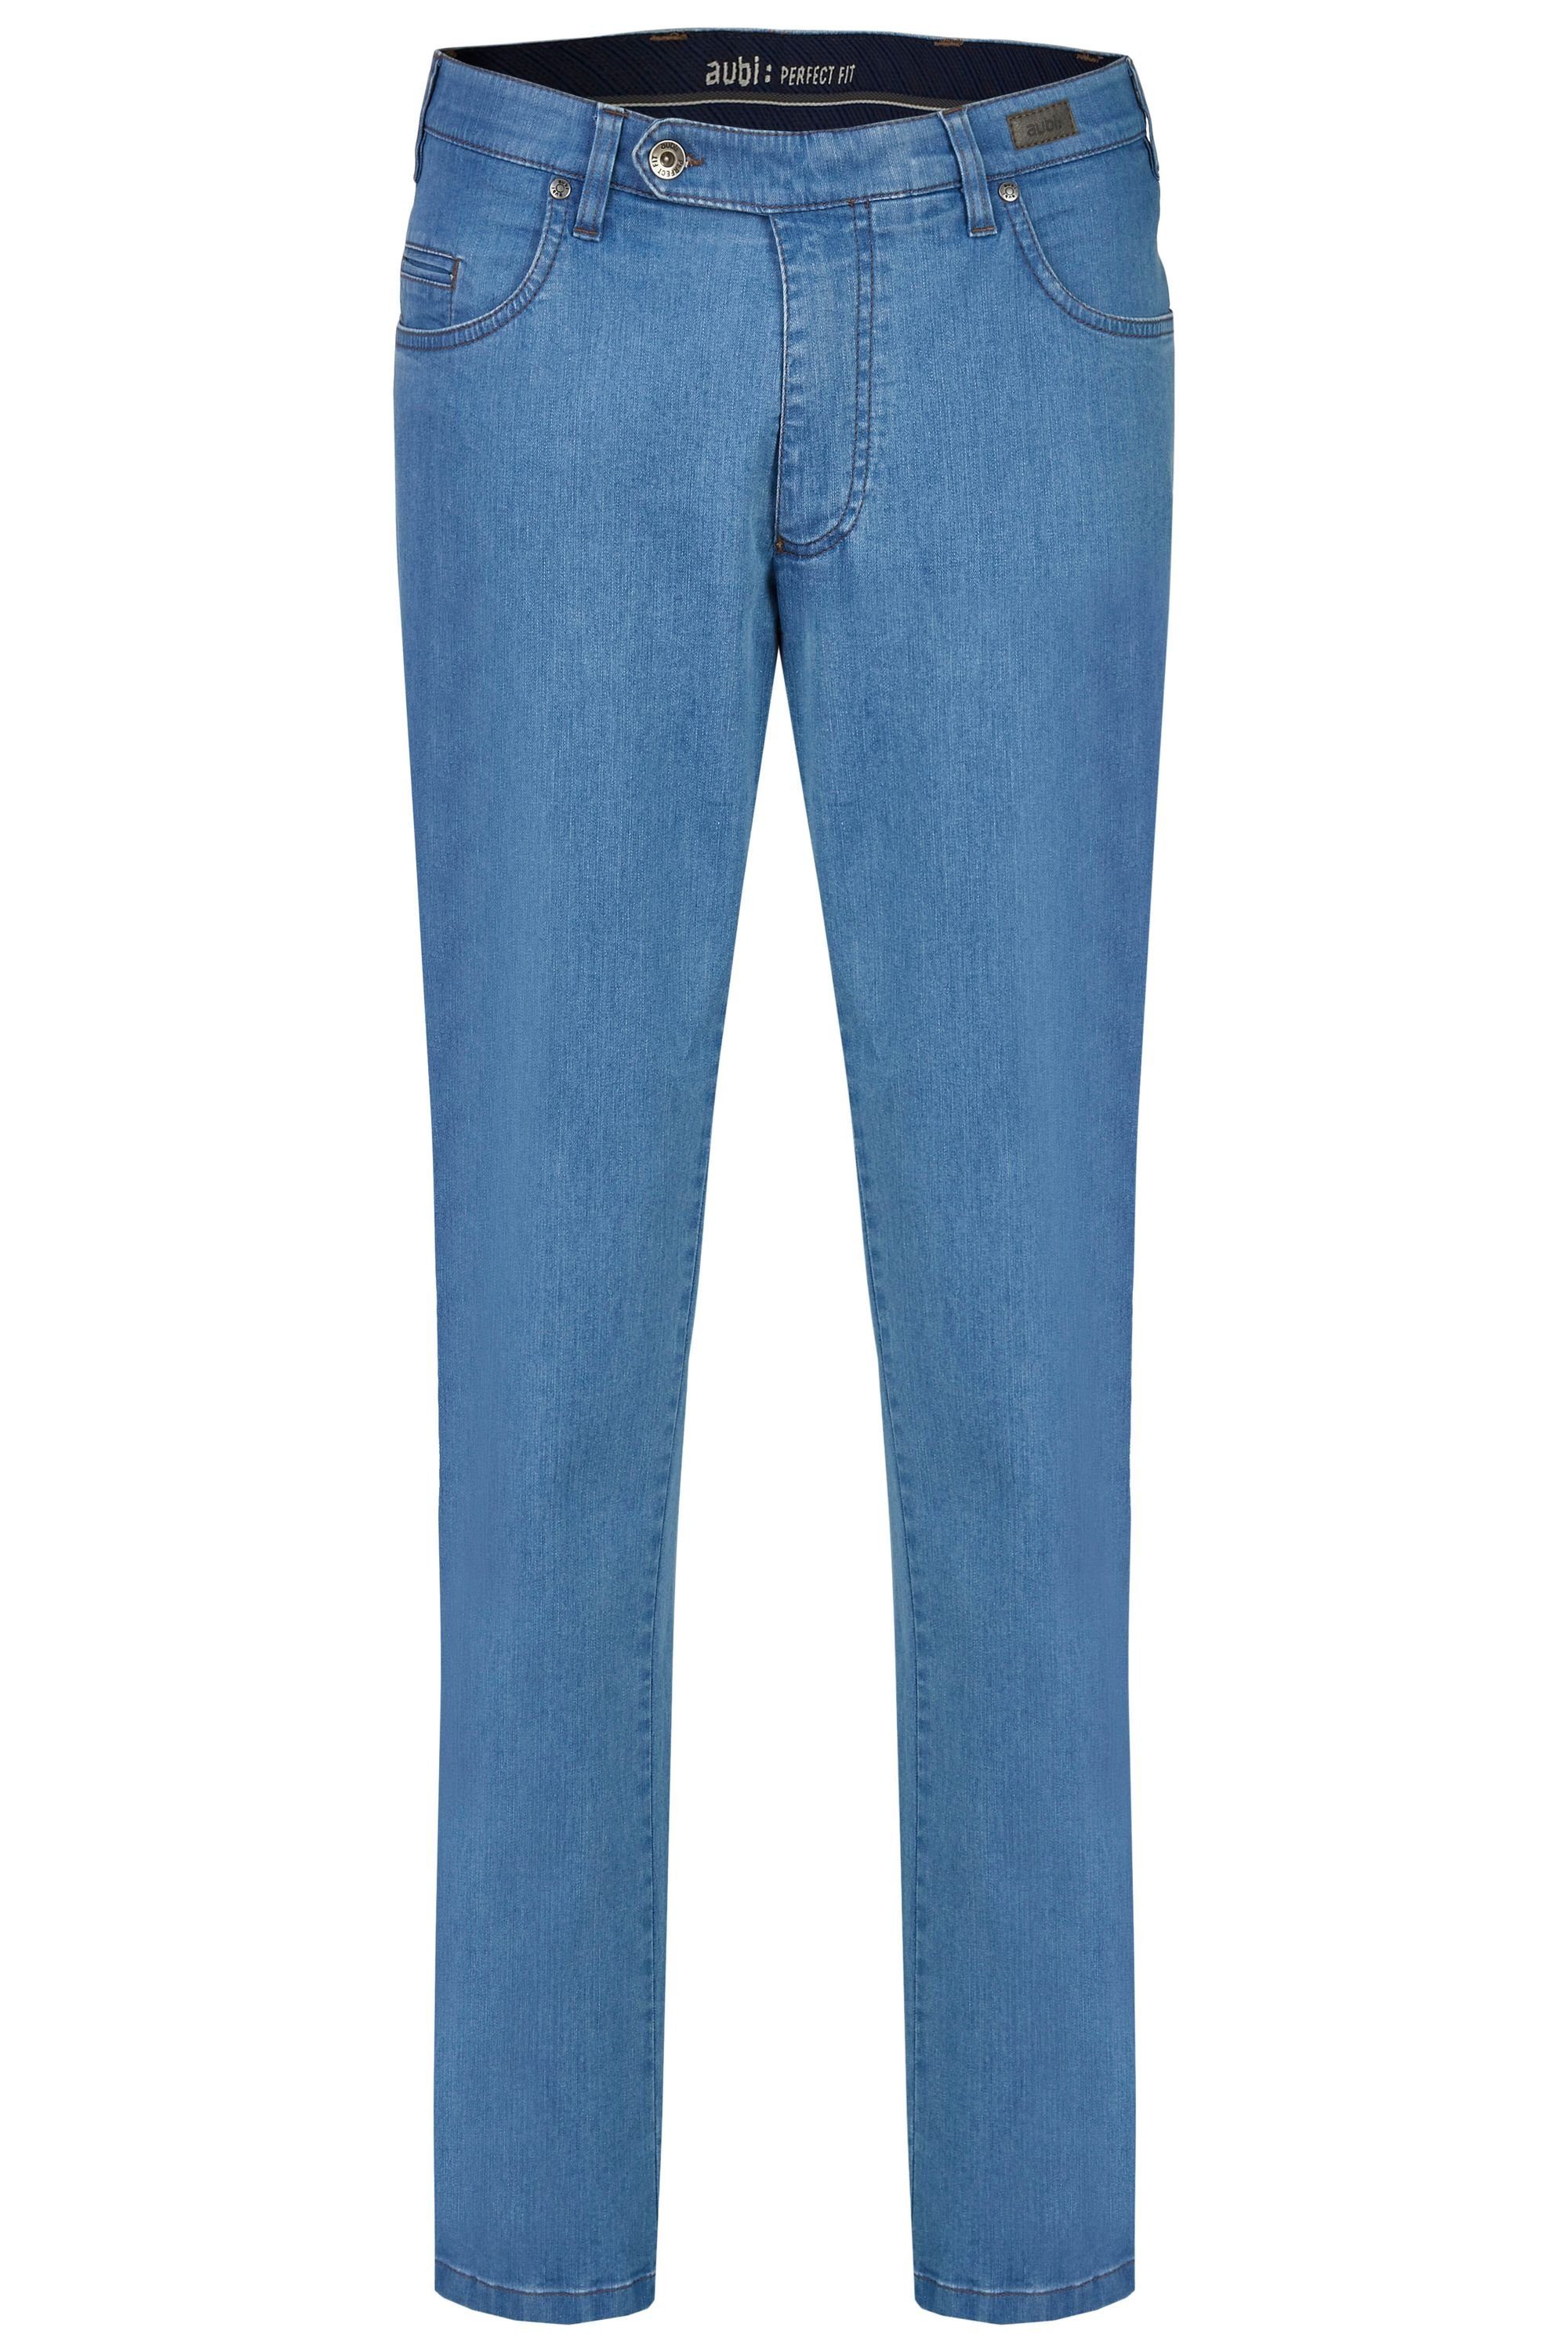 aubi: Bequeme Jeans Jeans Fit Hose High Herren Modell 577 (43) bleached Perfect Sommer Stretch Flex aus aubi Baumwolle